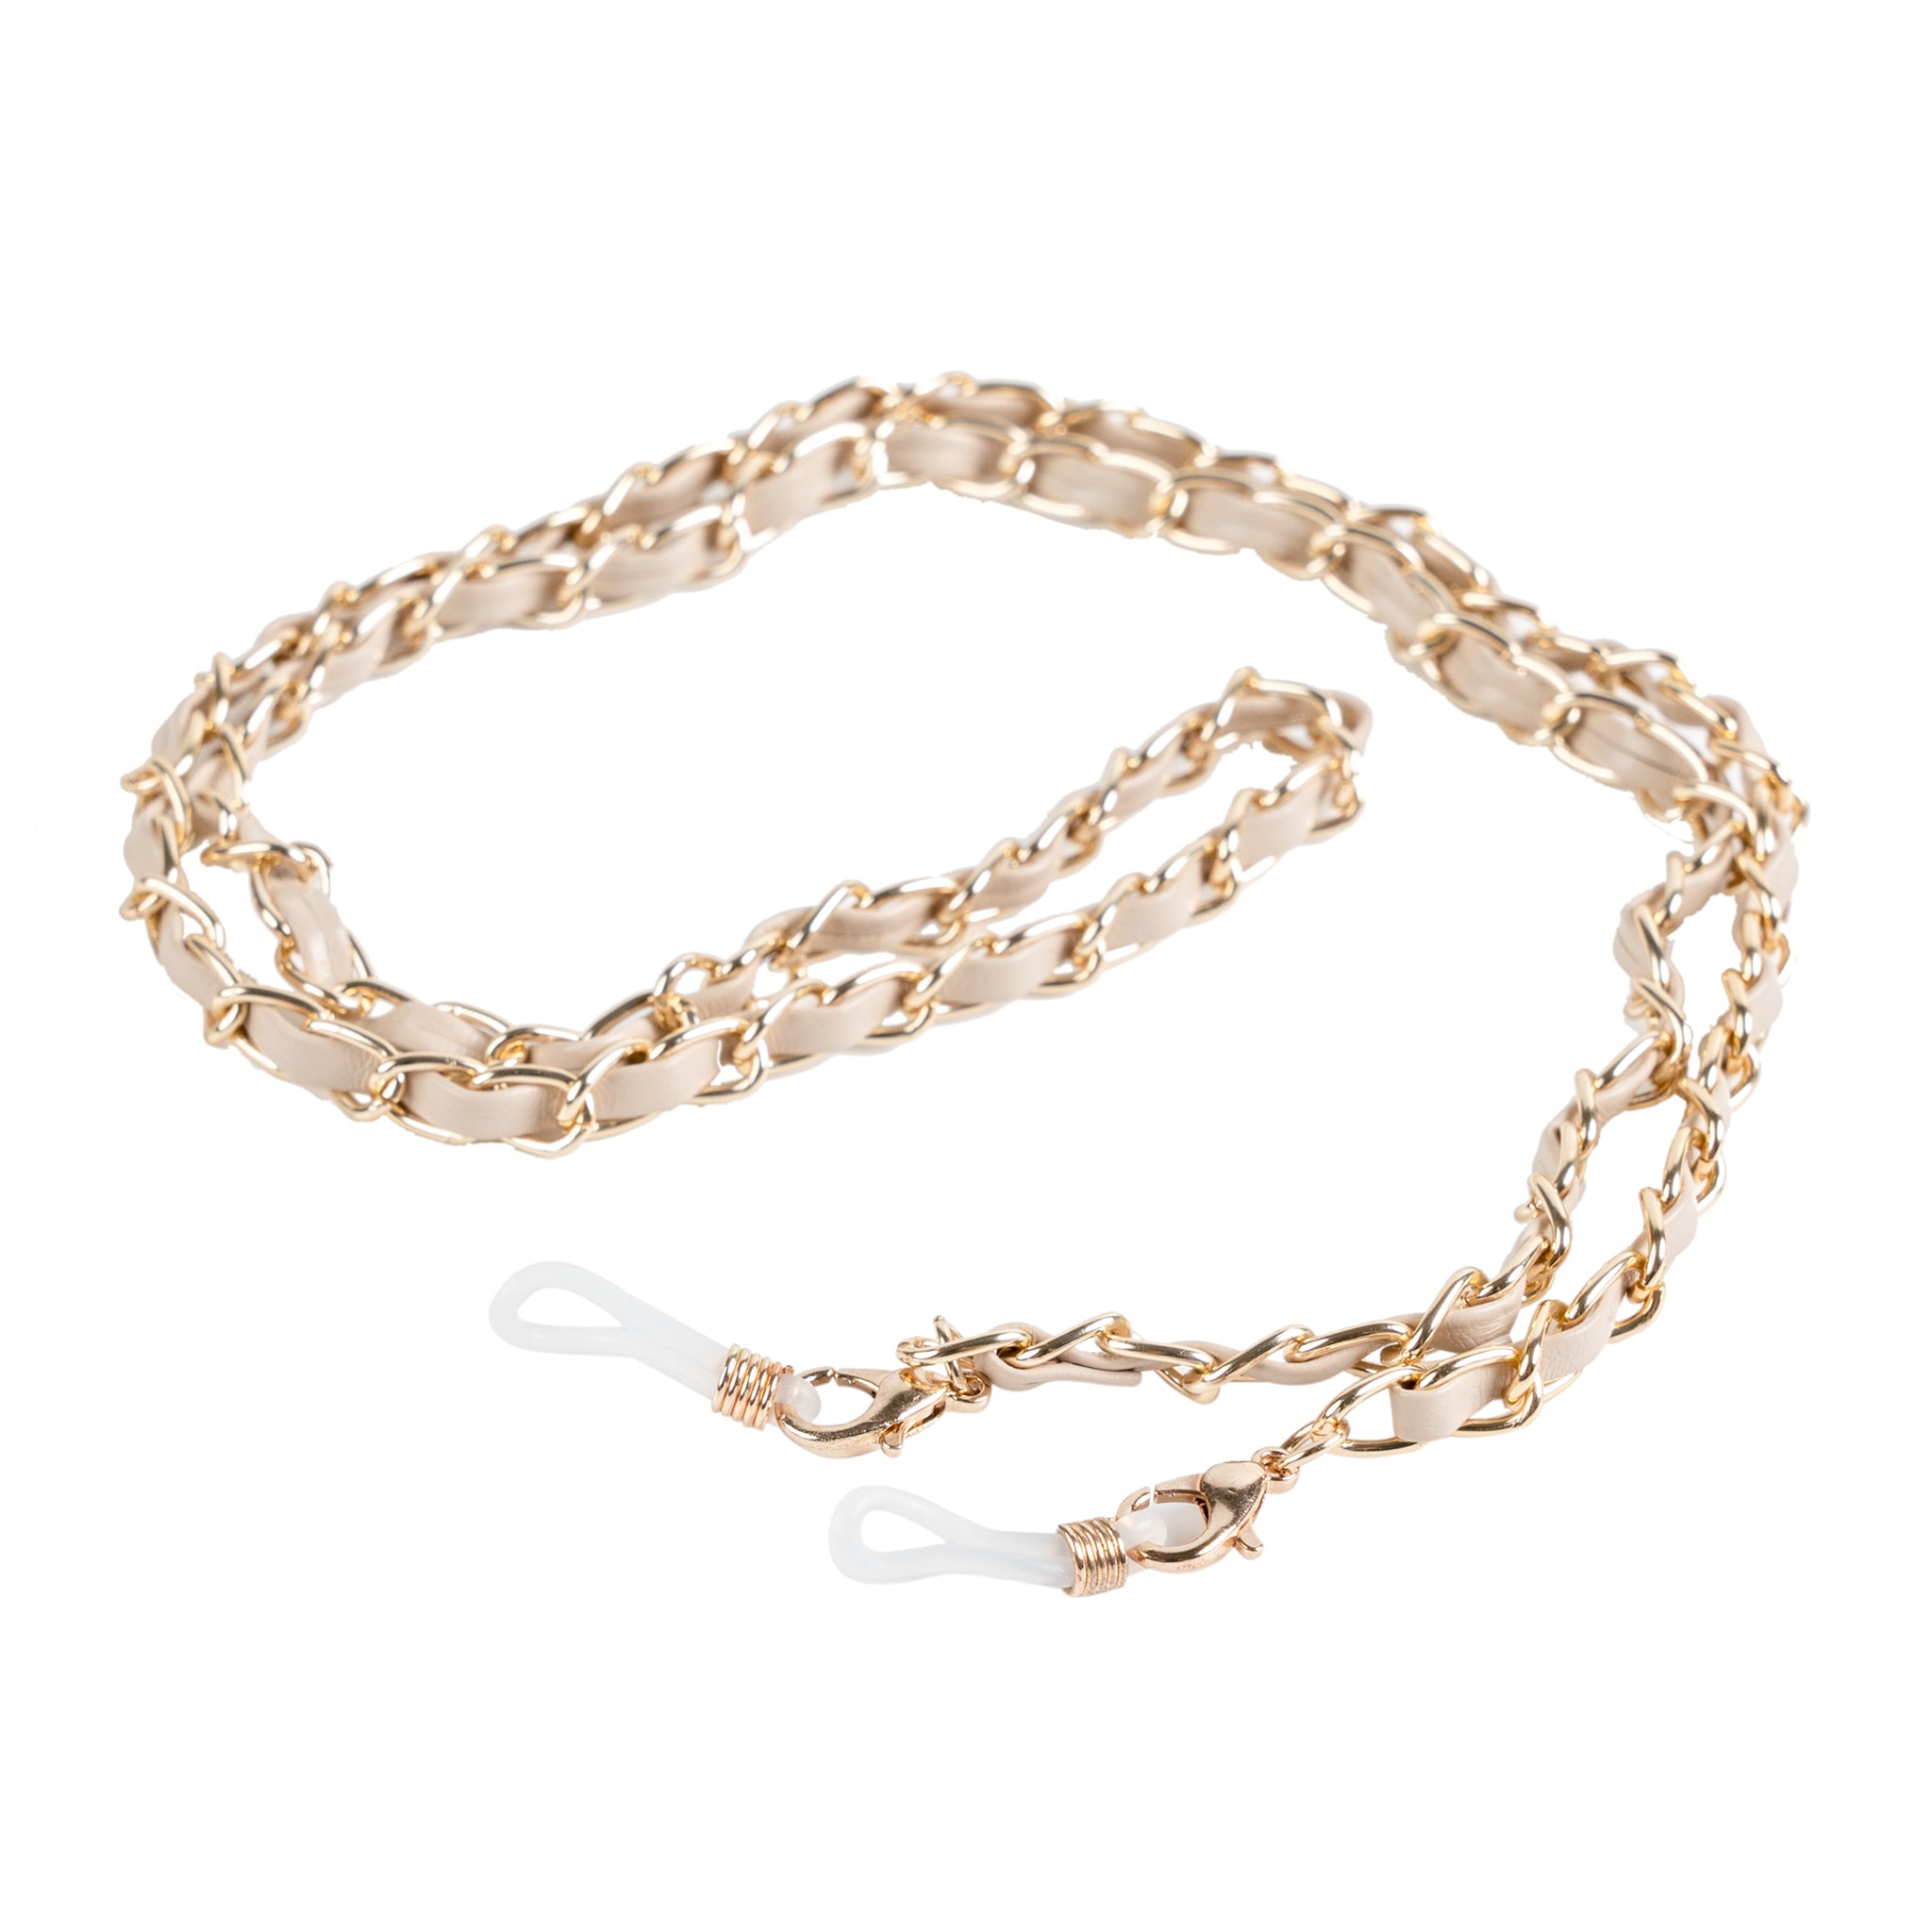 Chokore Braided Glass Chain (Khaki & Gold)